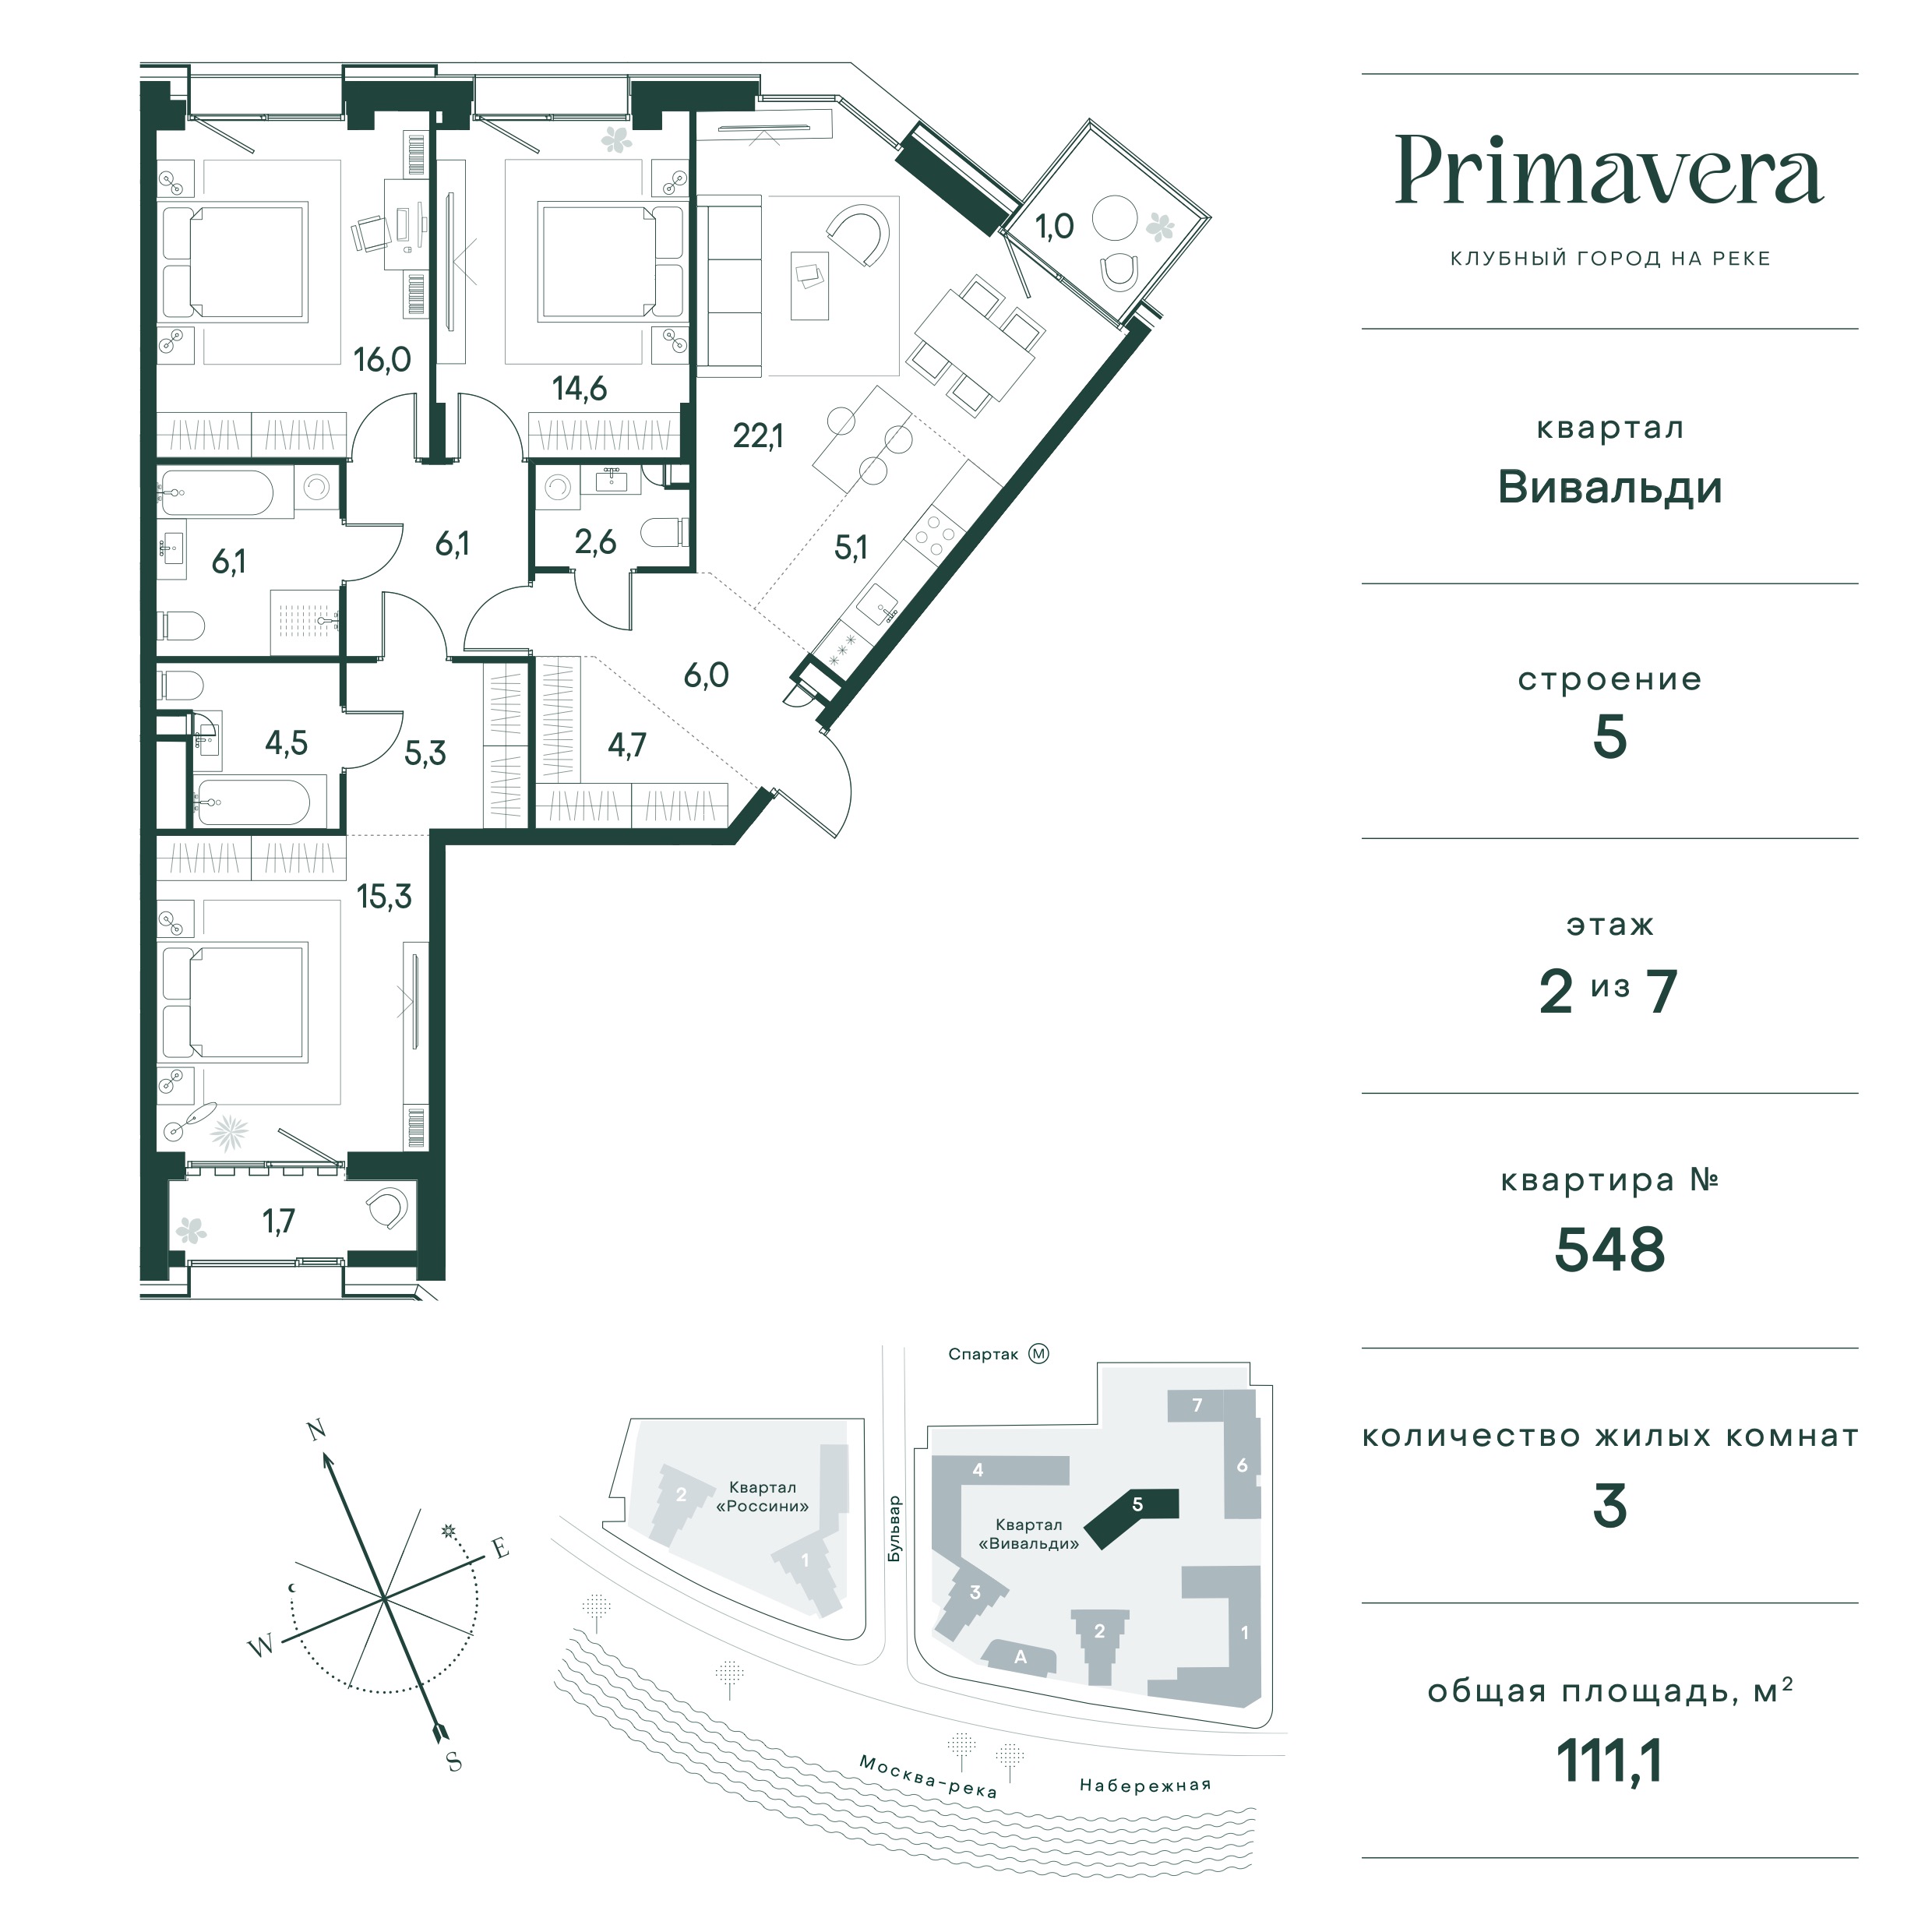 Планировка Квартира с 3 спальнями 111.1 м2 в ЖК Primavera